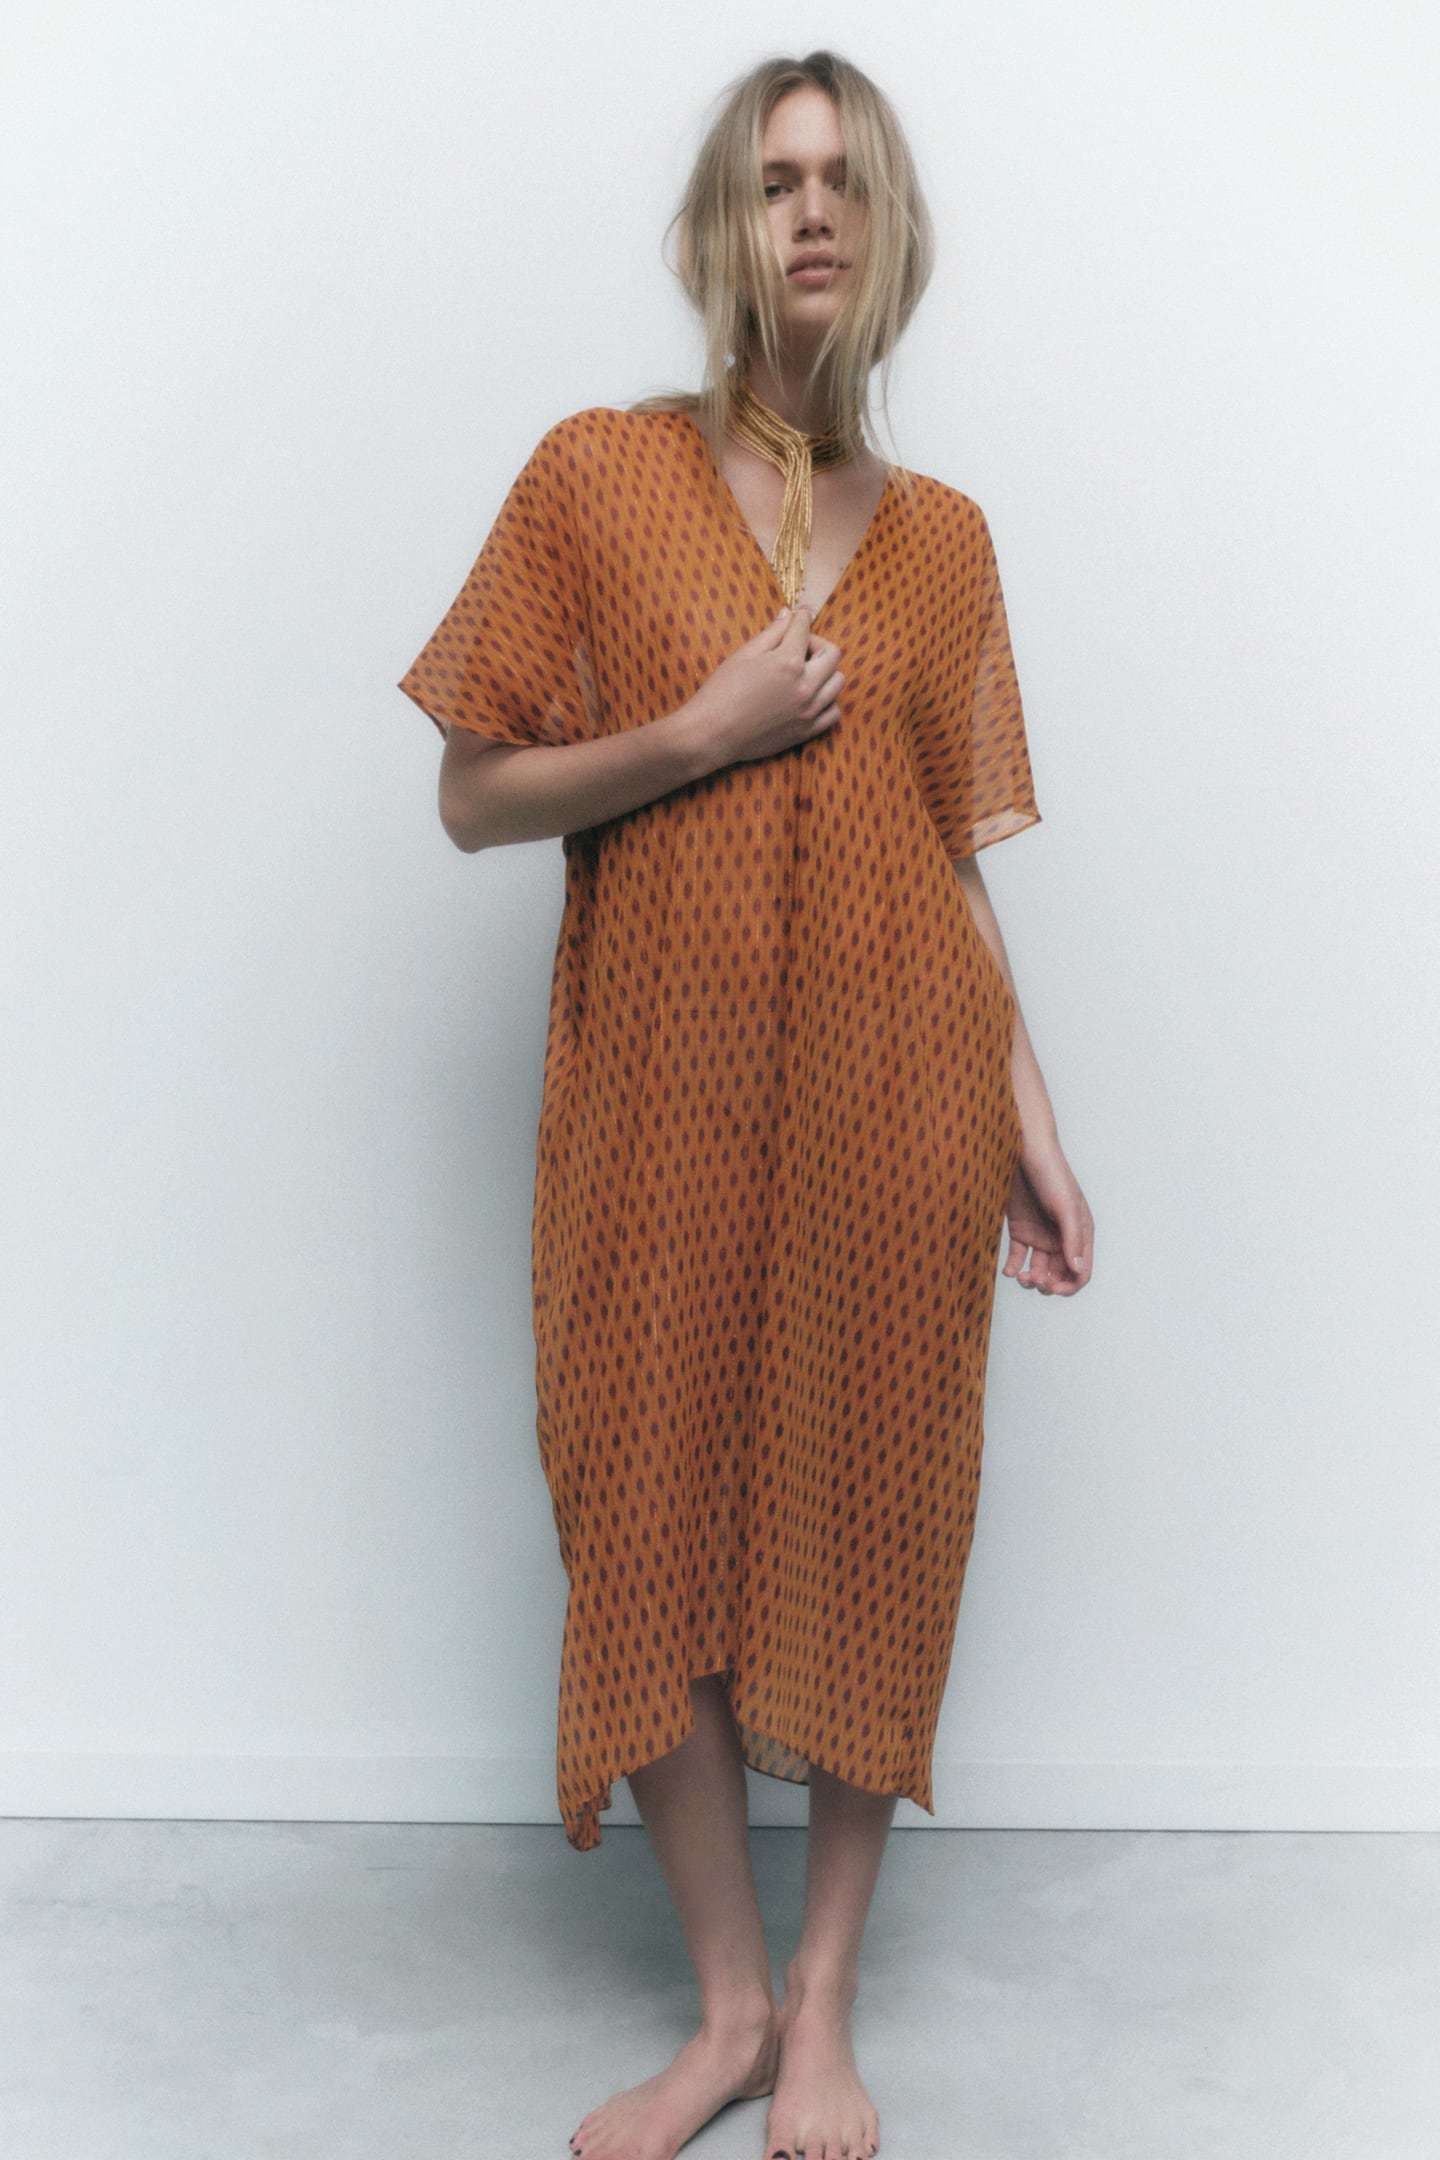 Vestido naranja, de Zara.